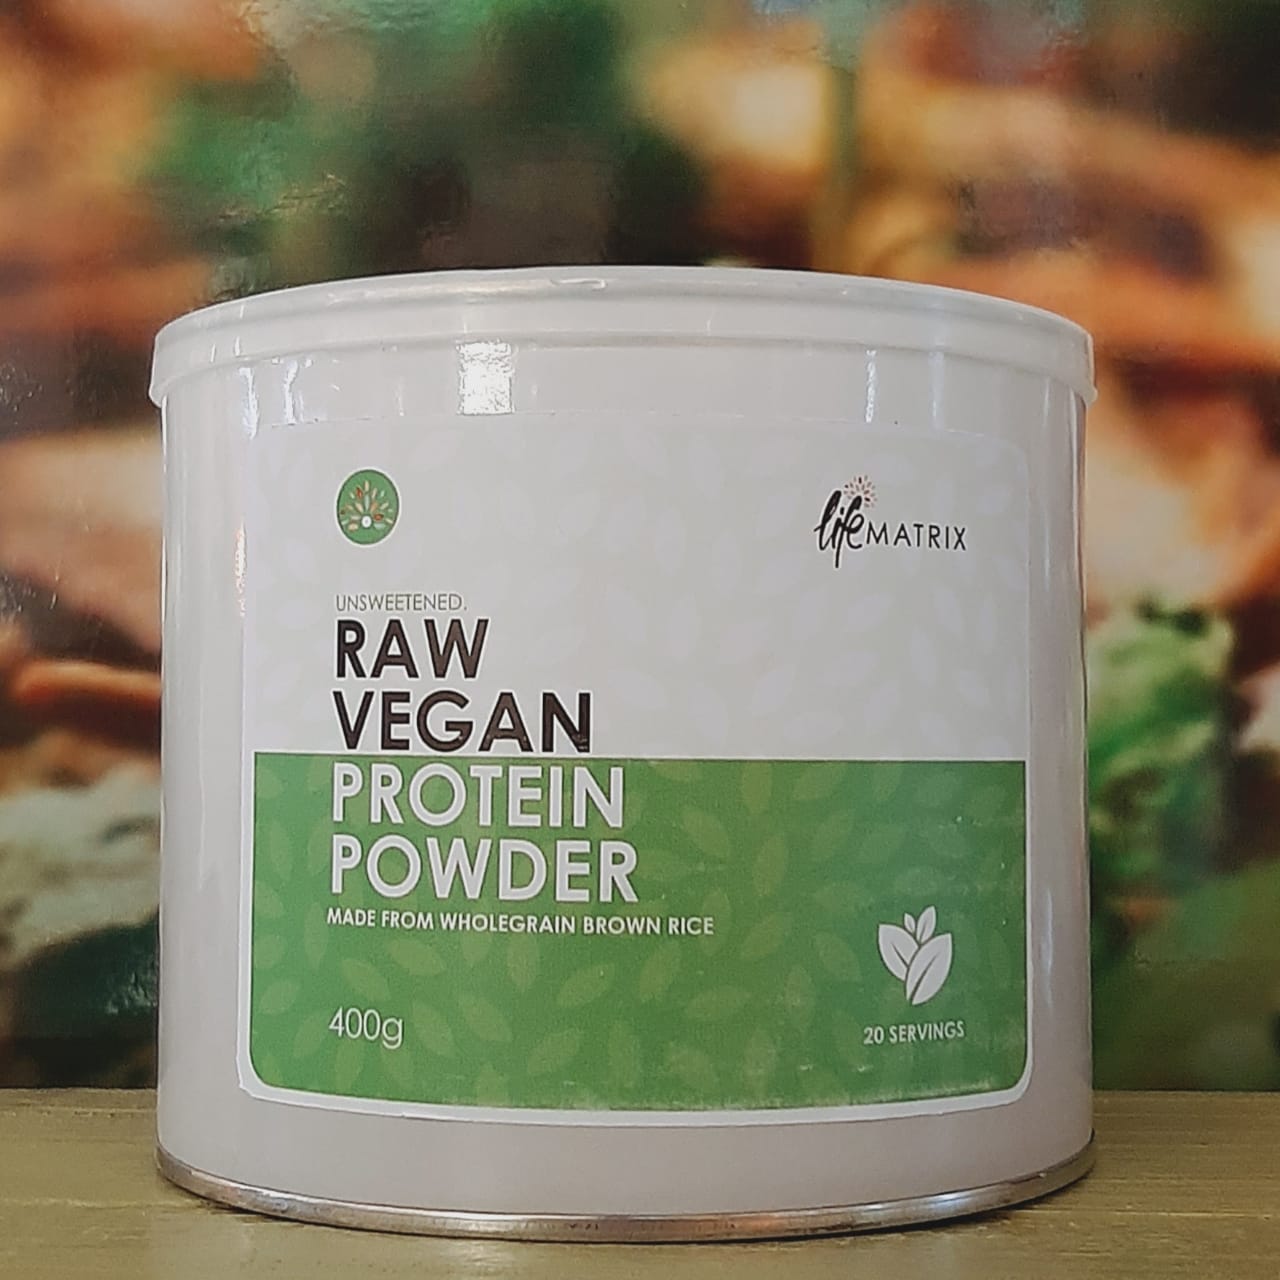 Lifematrix Raw Vegan Protien Powder 400g